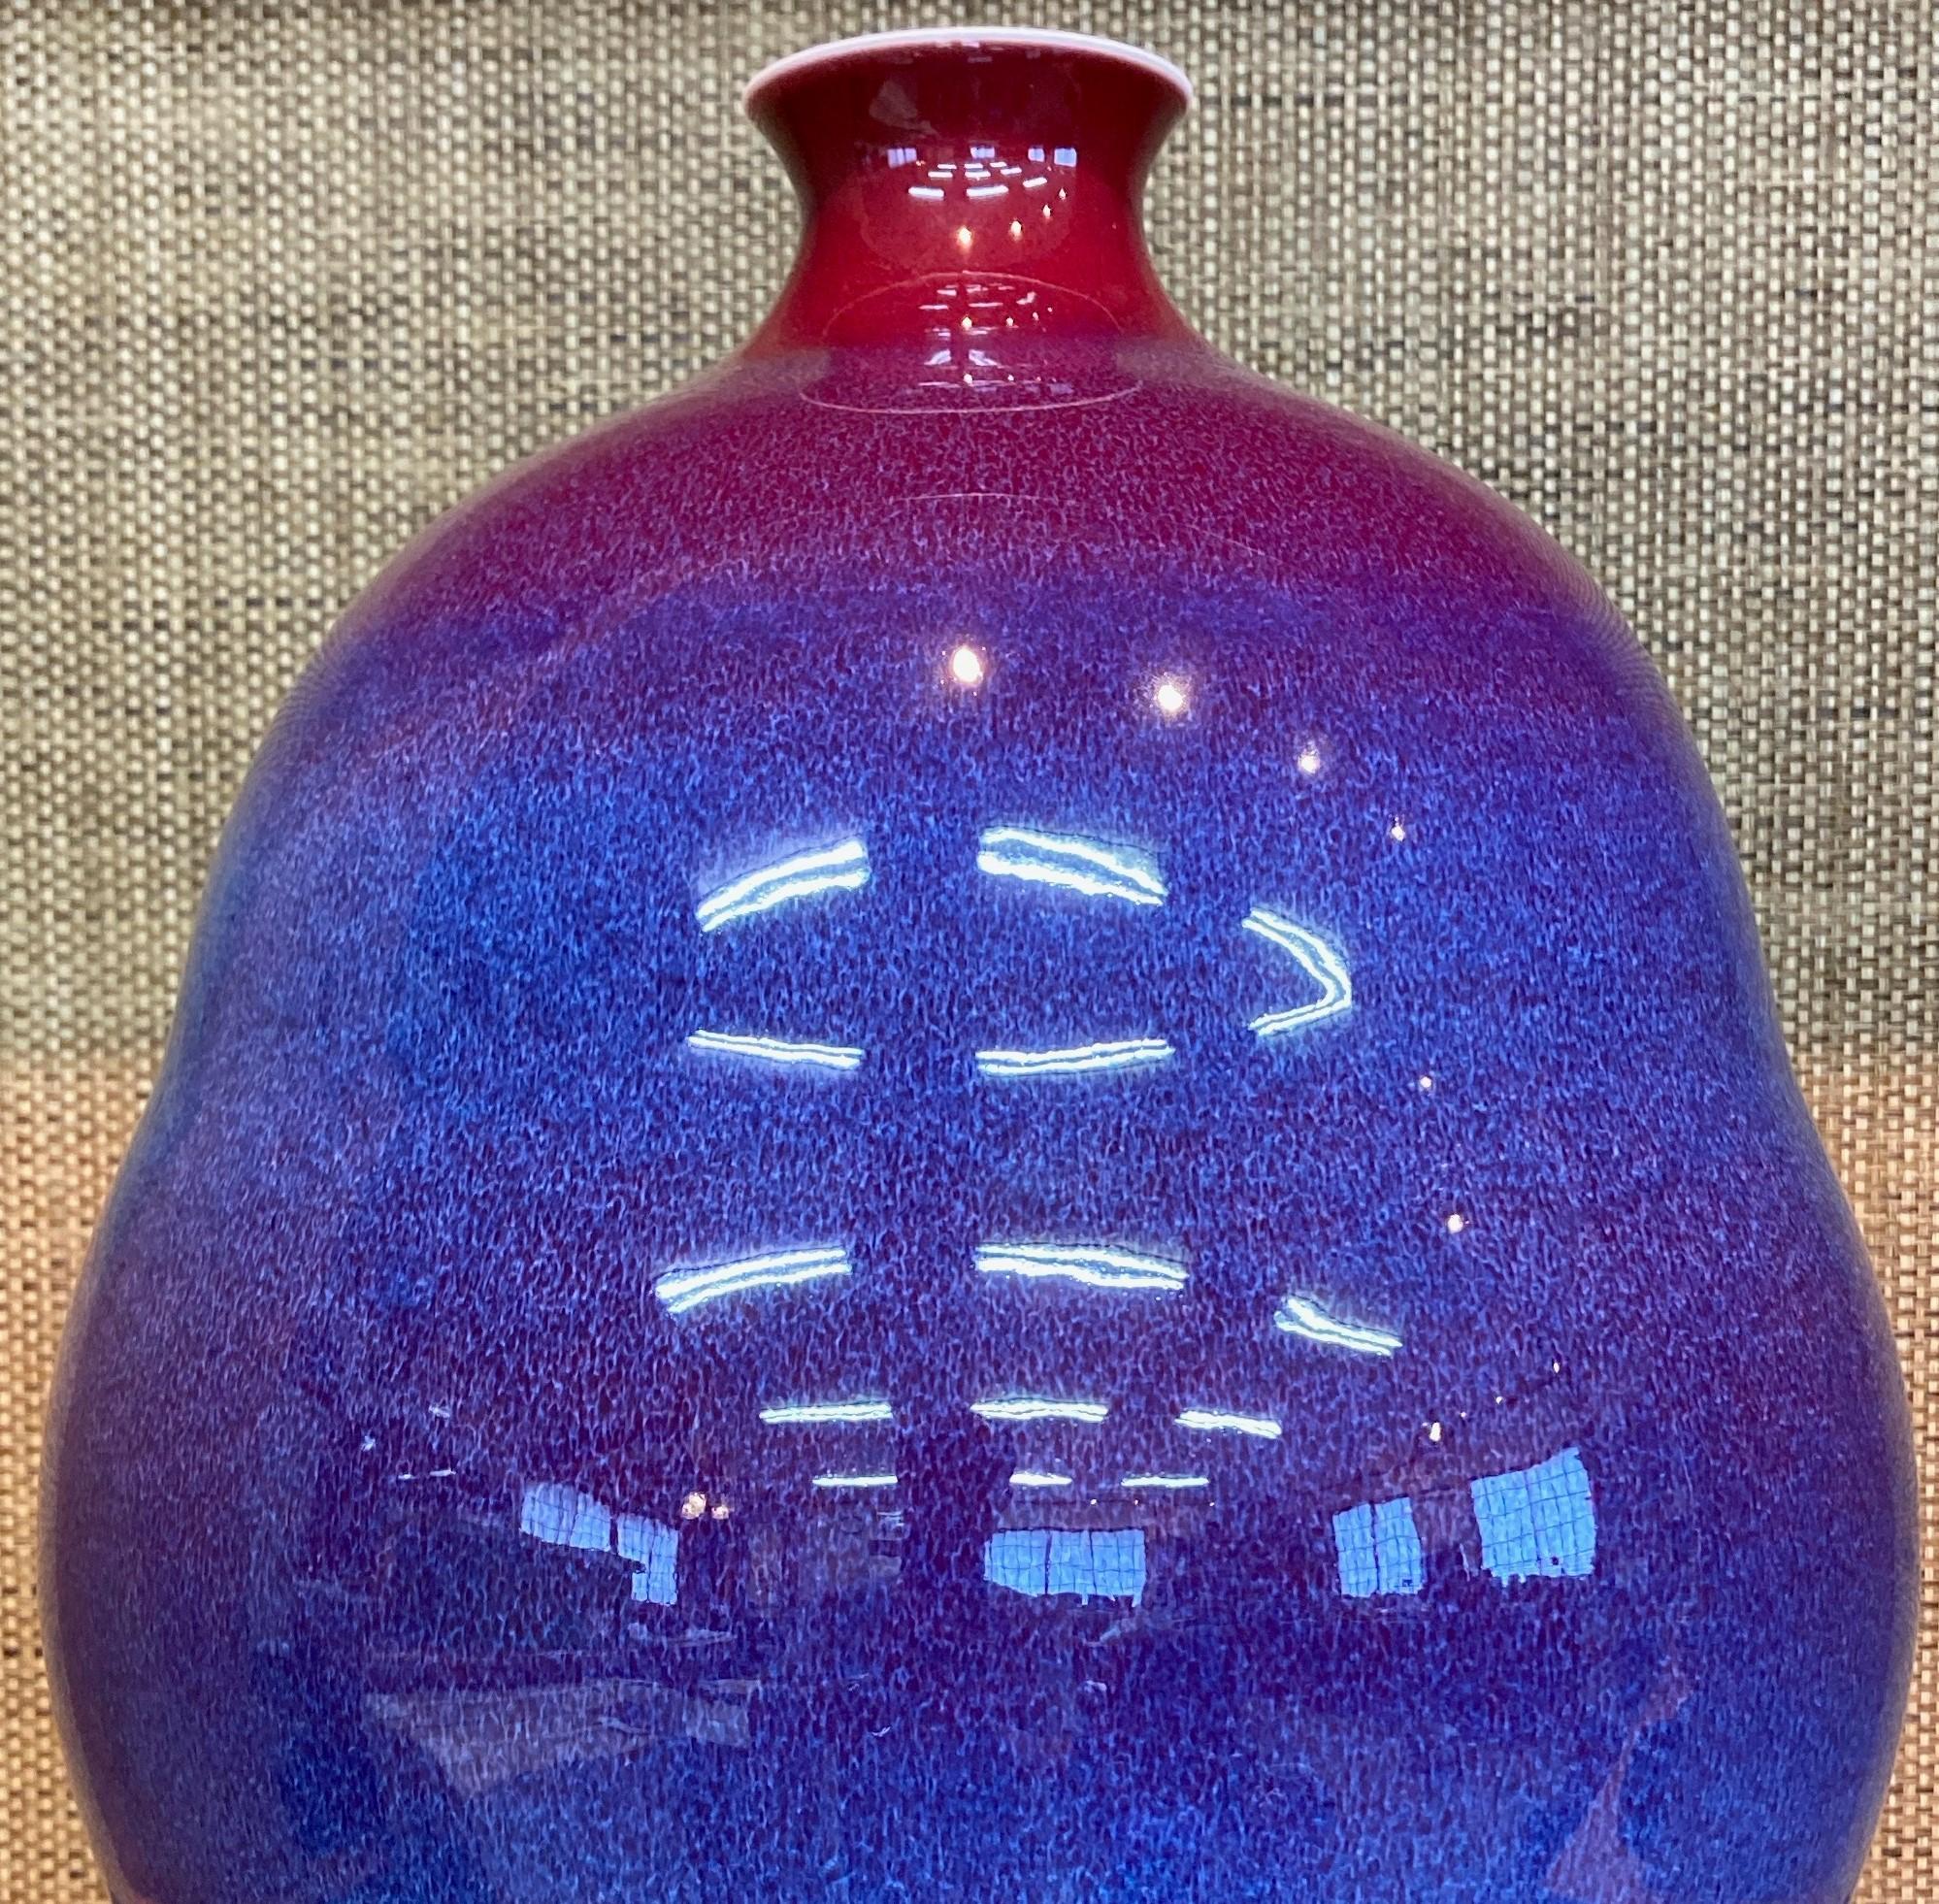 Exquisite dekorative Porzellanvase, von Hand glasiert in lebhaftem Rot und E auf einem atemberaubenden flaschenförmigen Körper, aus der außergewöhnlichen Galaxy-Serie des berühmten, preisgekrönten Porzellanmeisters aus der Arita-Imari-Region in